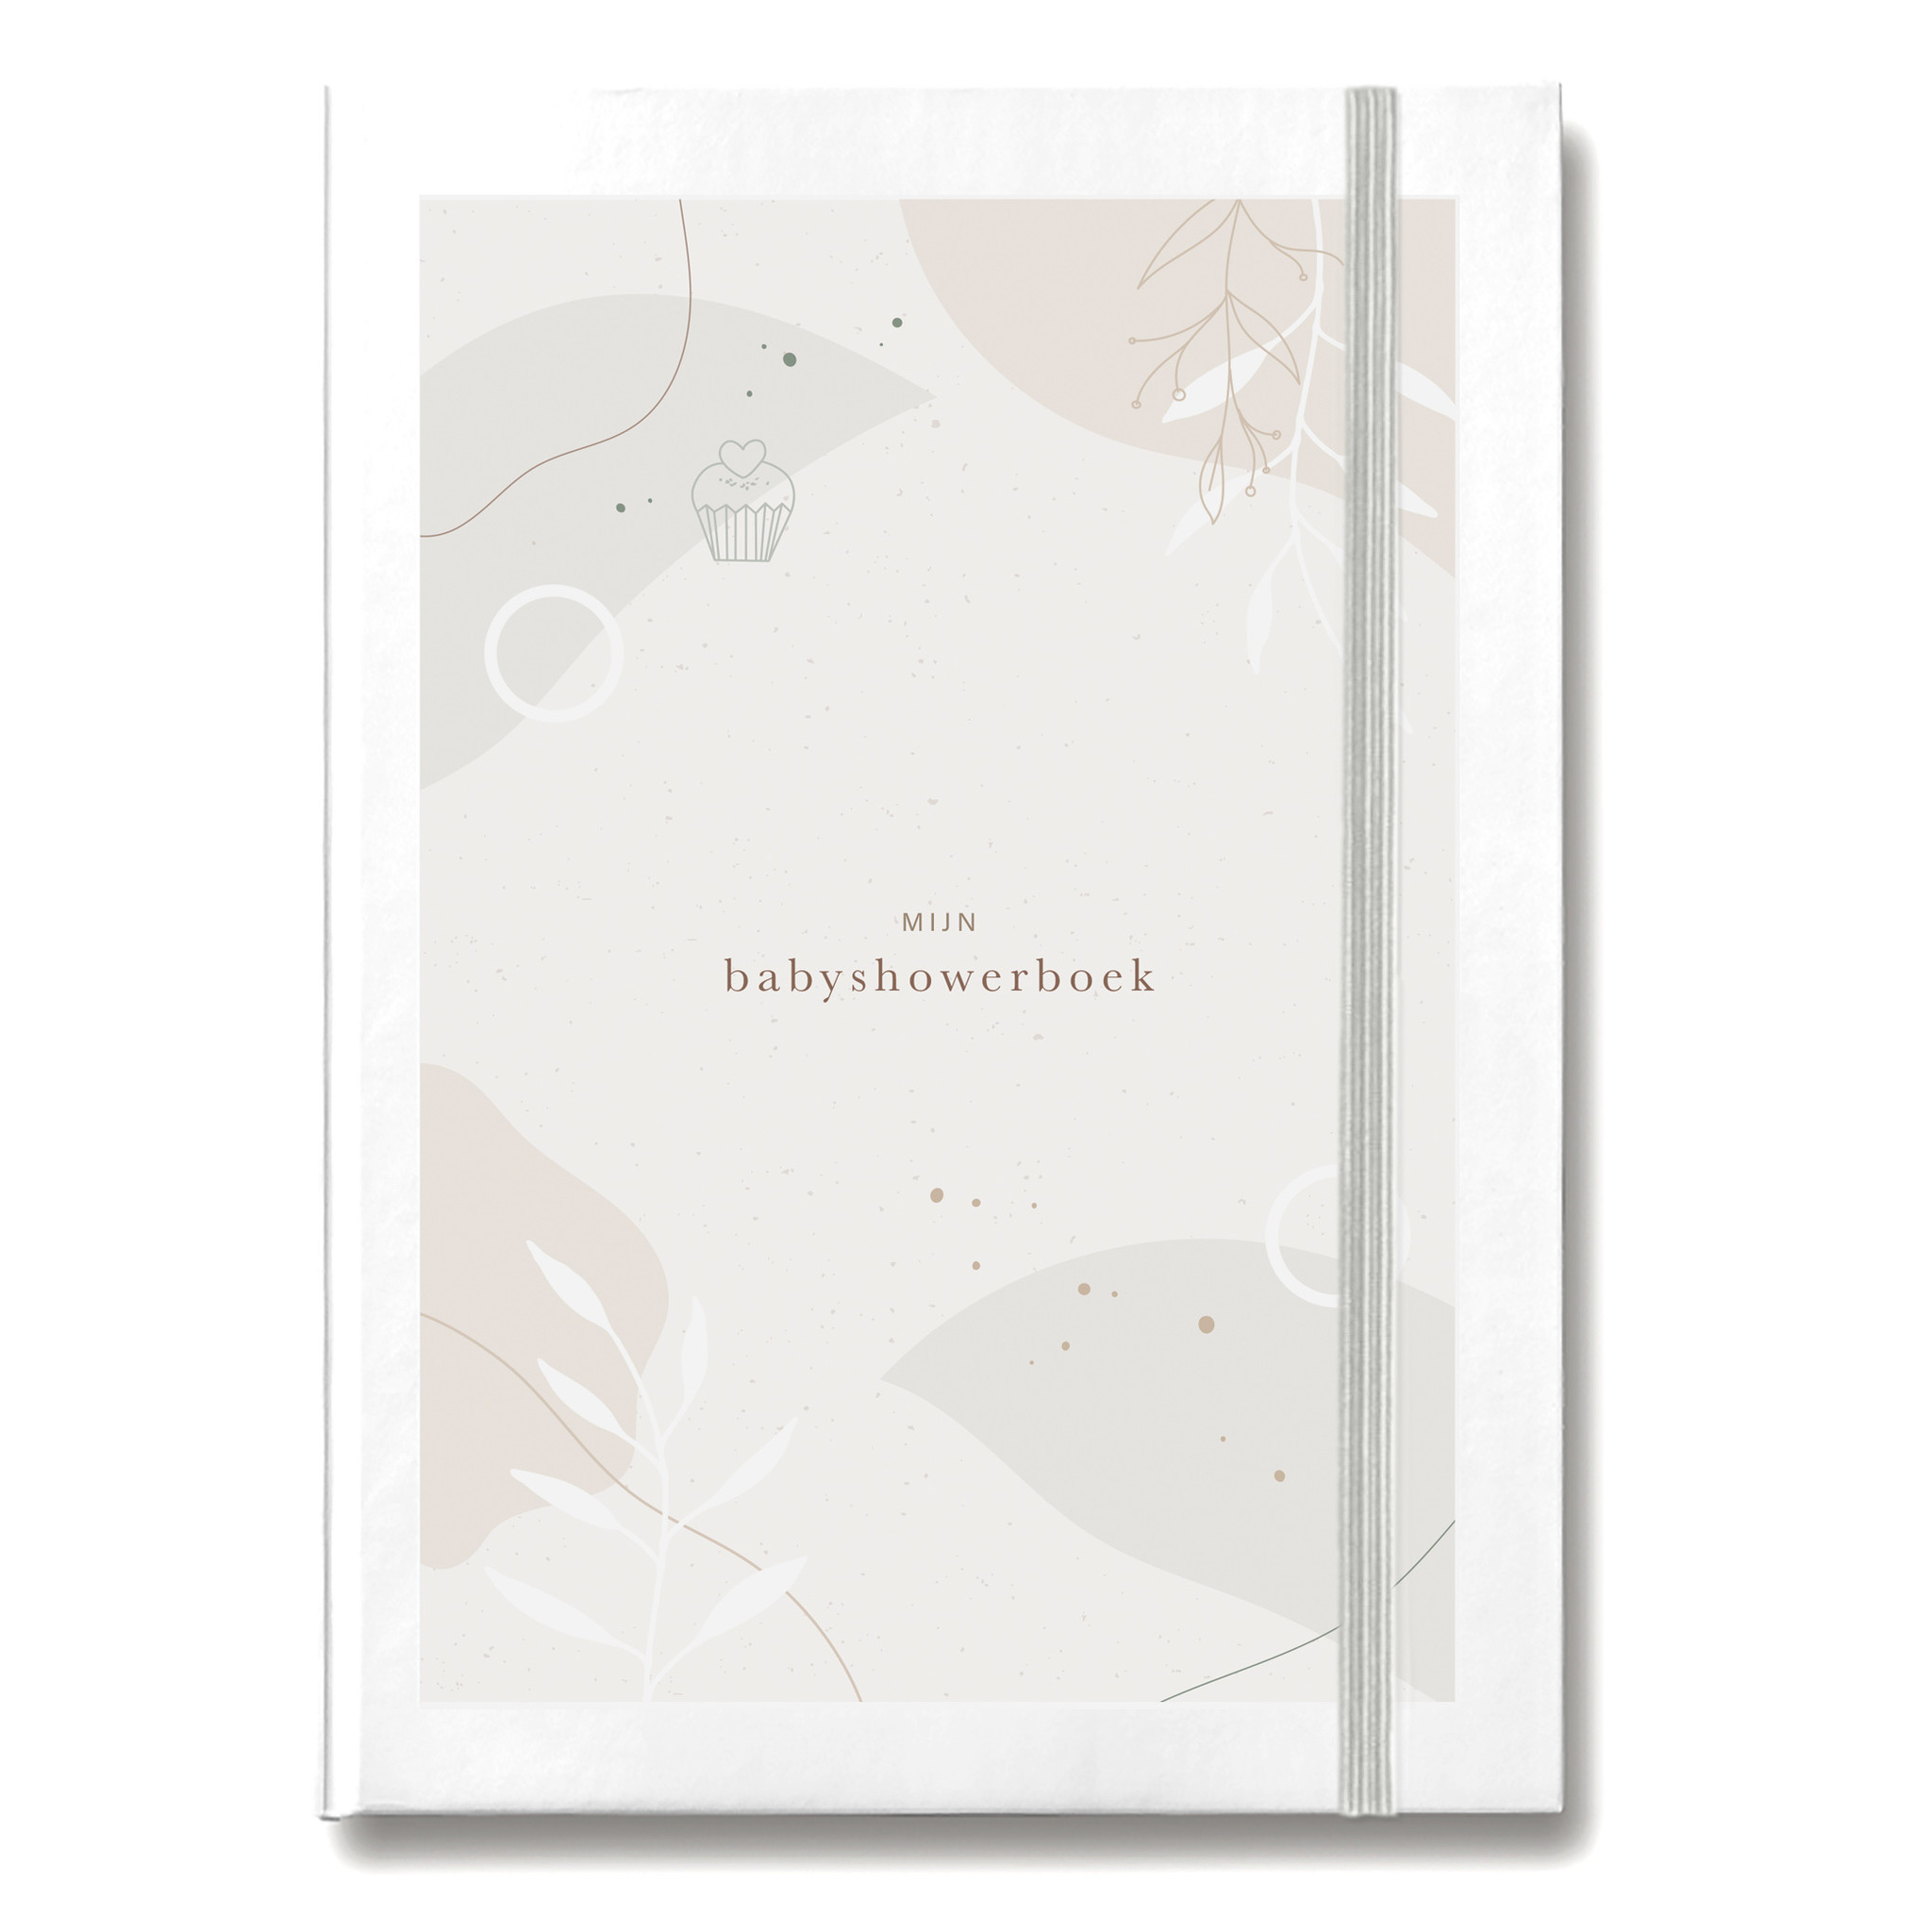 Maan Amsterdam Mijn babyshowerboek (inclusief invulkaarten) - Eclipse collectie